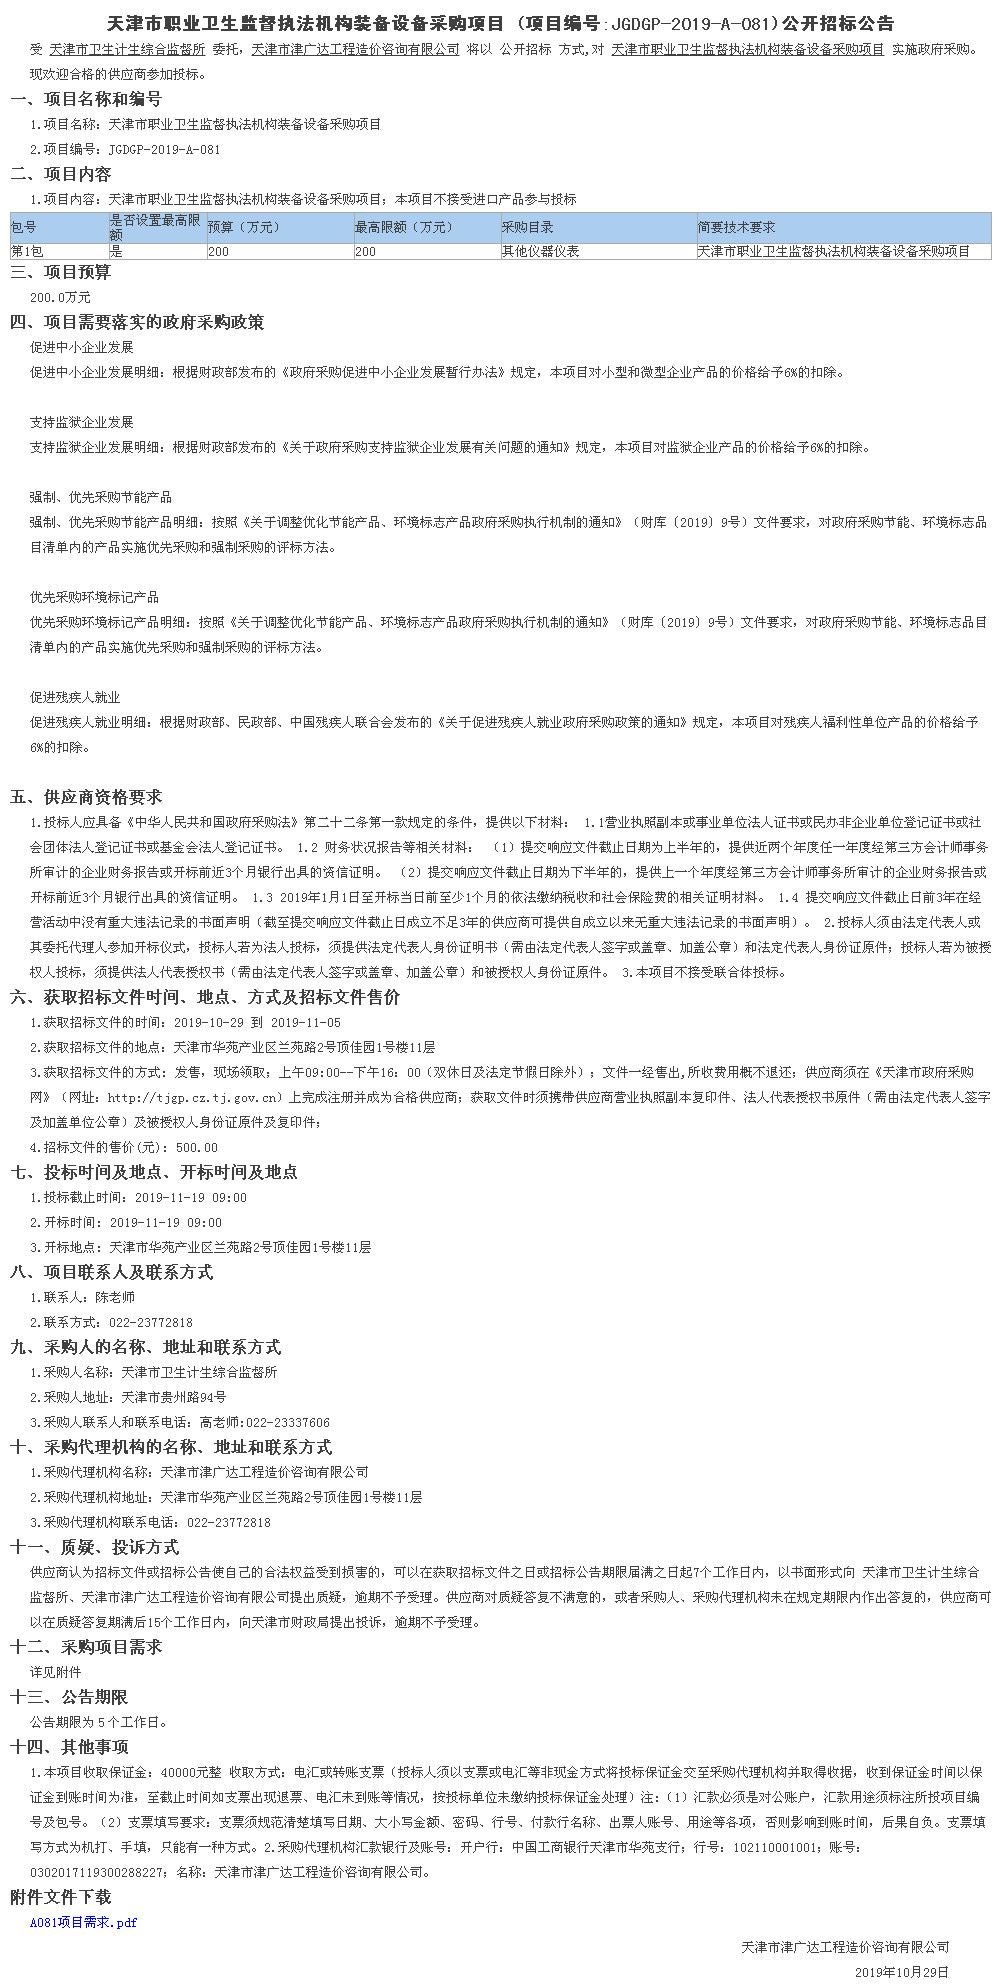 天津市职业卫生监督执法机构装备设备采购项目(图1)